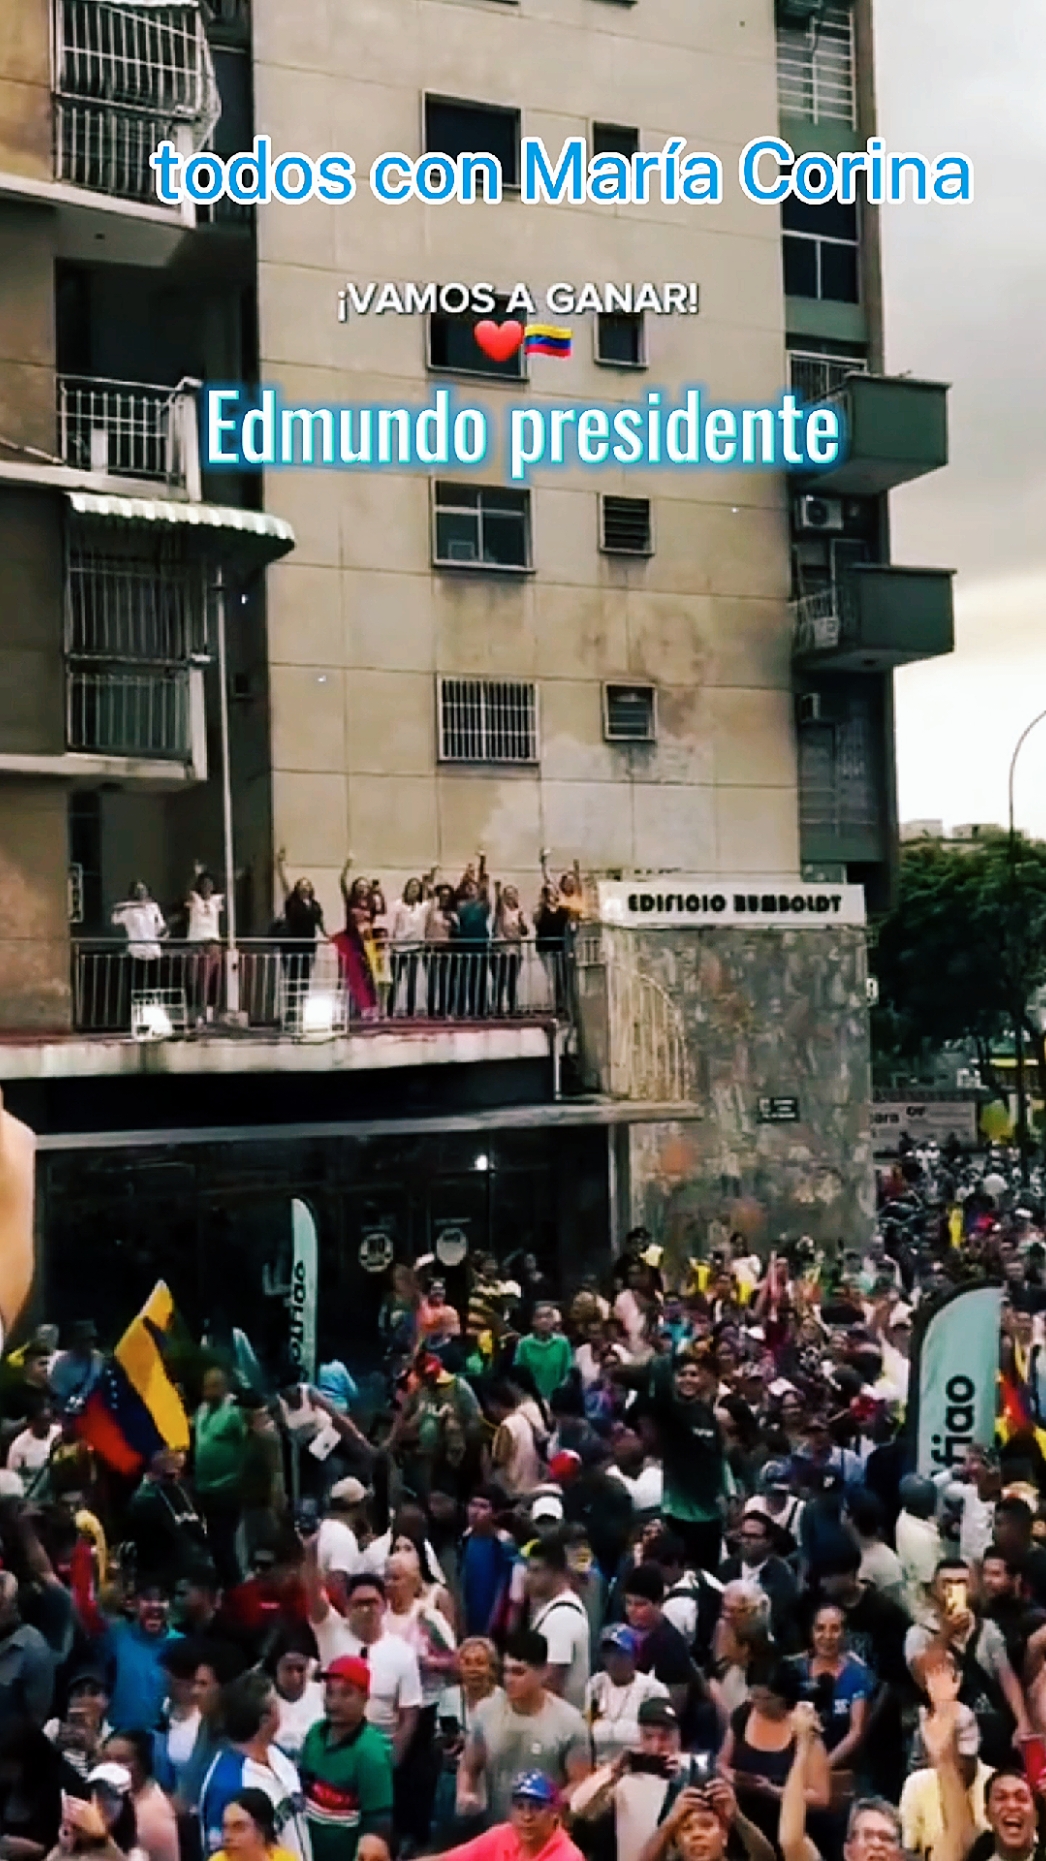 María Corina y Edmundo presidente #edmundo #mariacorina #fyp #venezuelalibre #foryou 